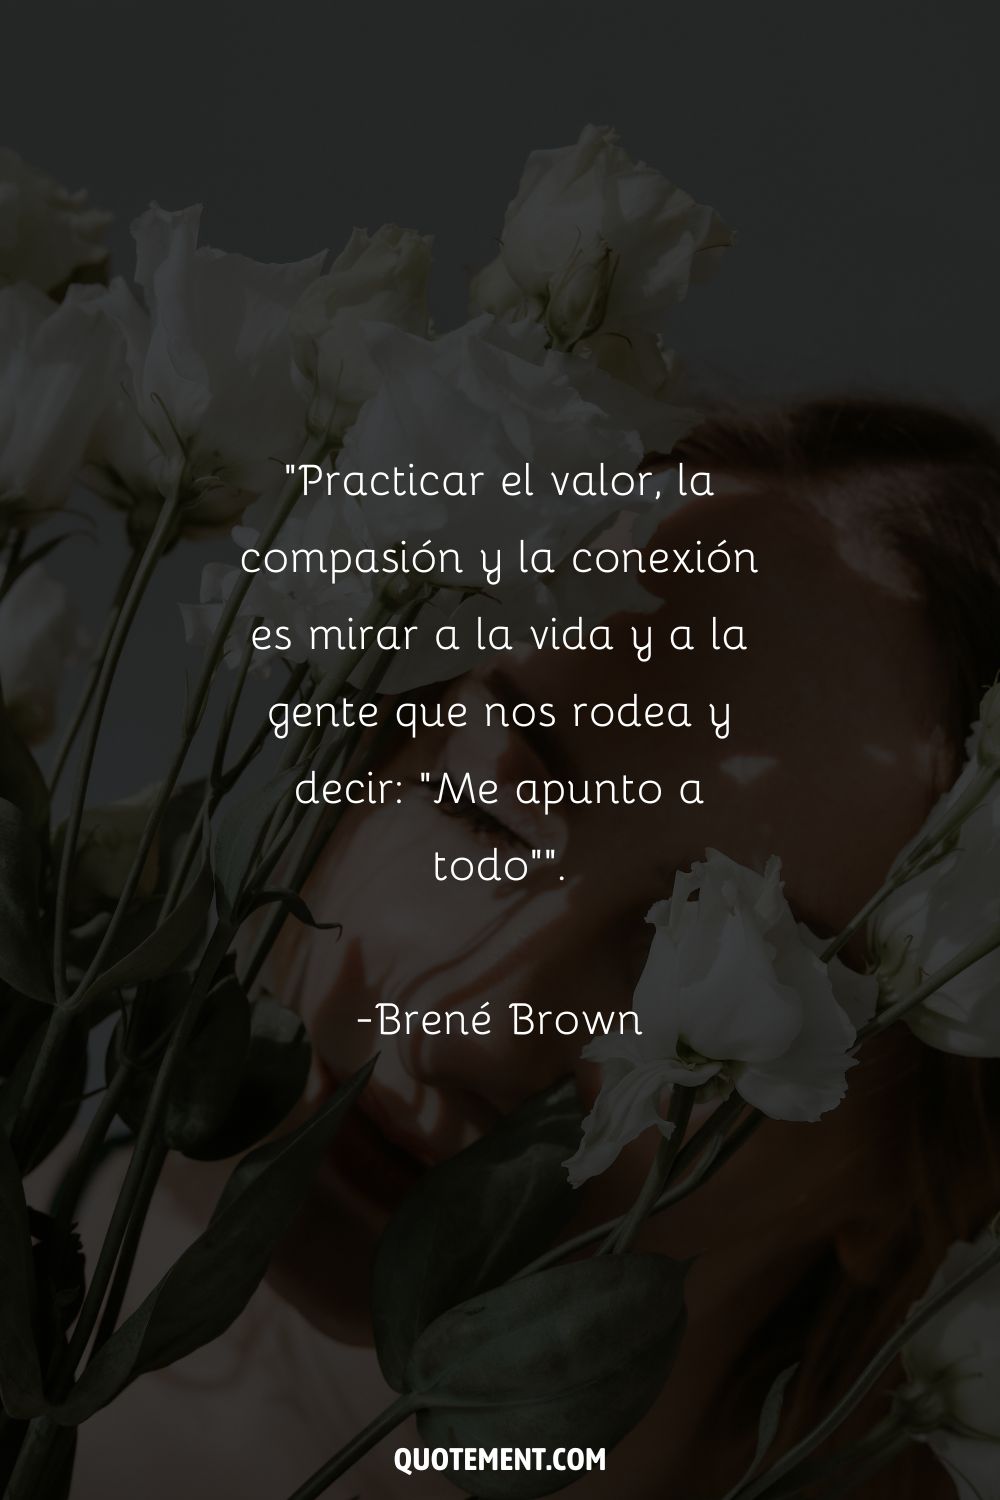 Un ramo de rosas blancas sobre el rostro de una mujer que representa la cita de Brene Brown sobre el valor